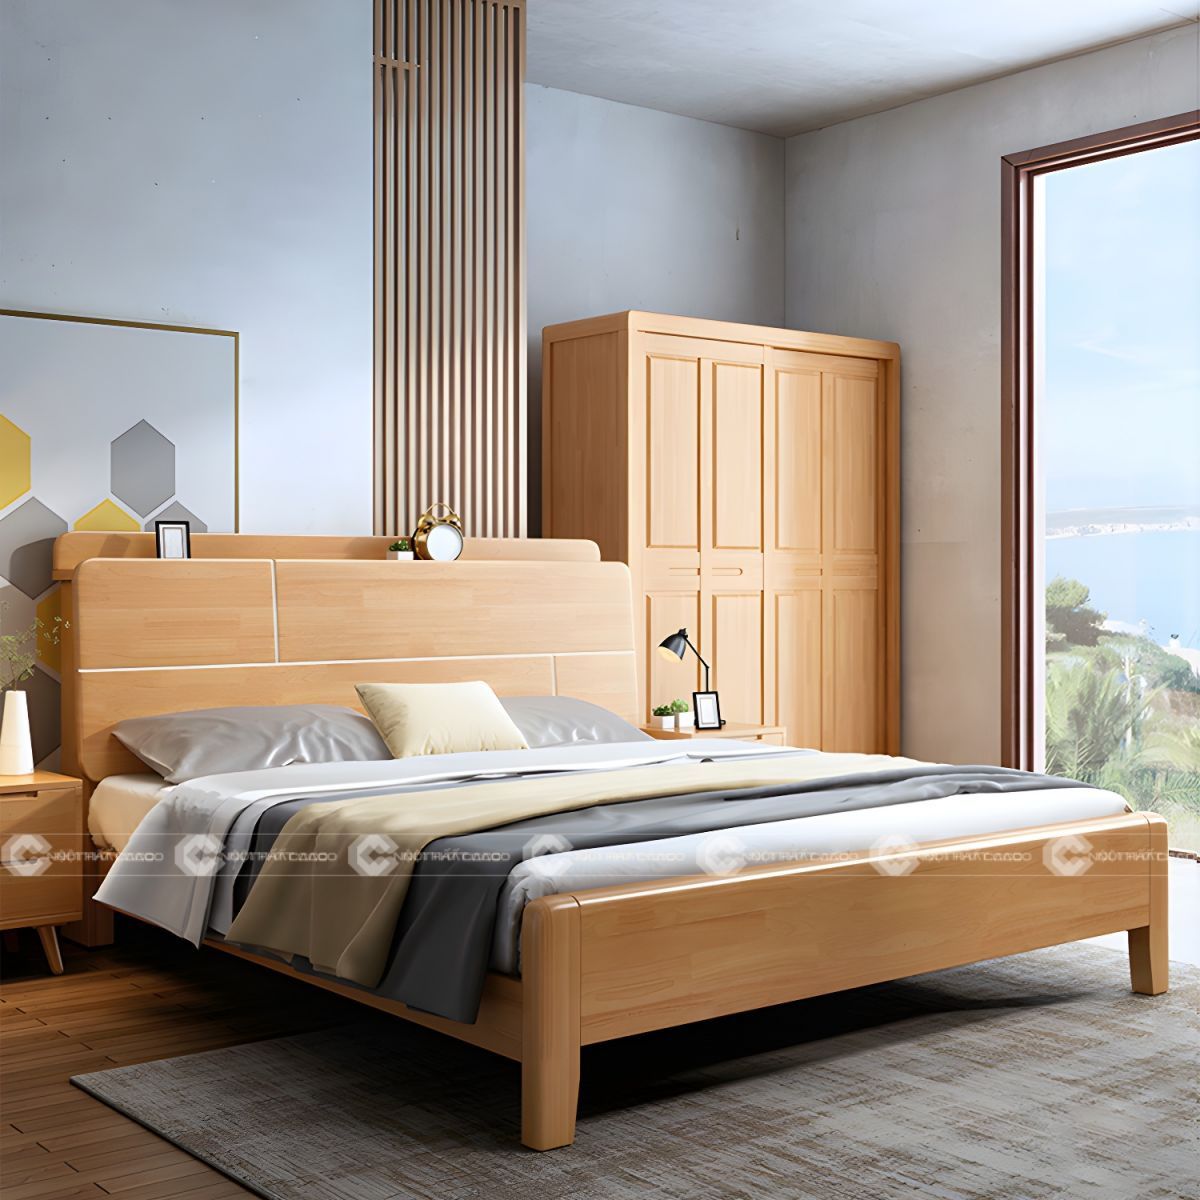 Giường ngủ gỗ tự nhiên chân thấp trang nhã